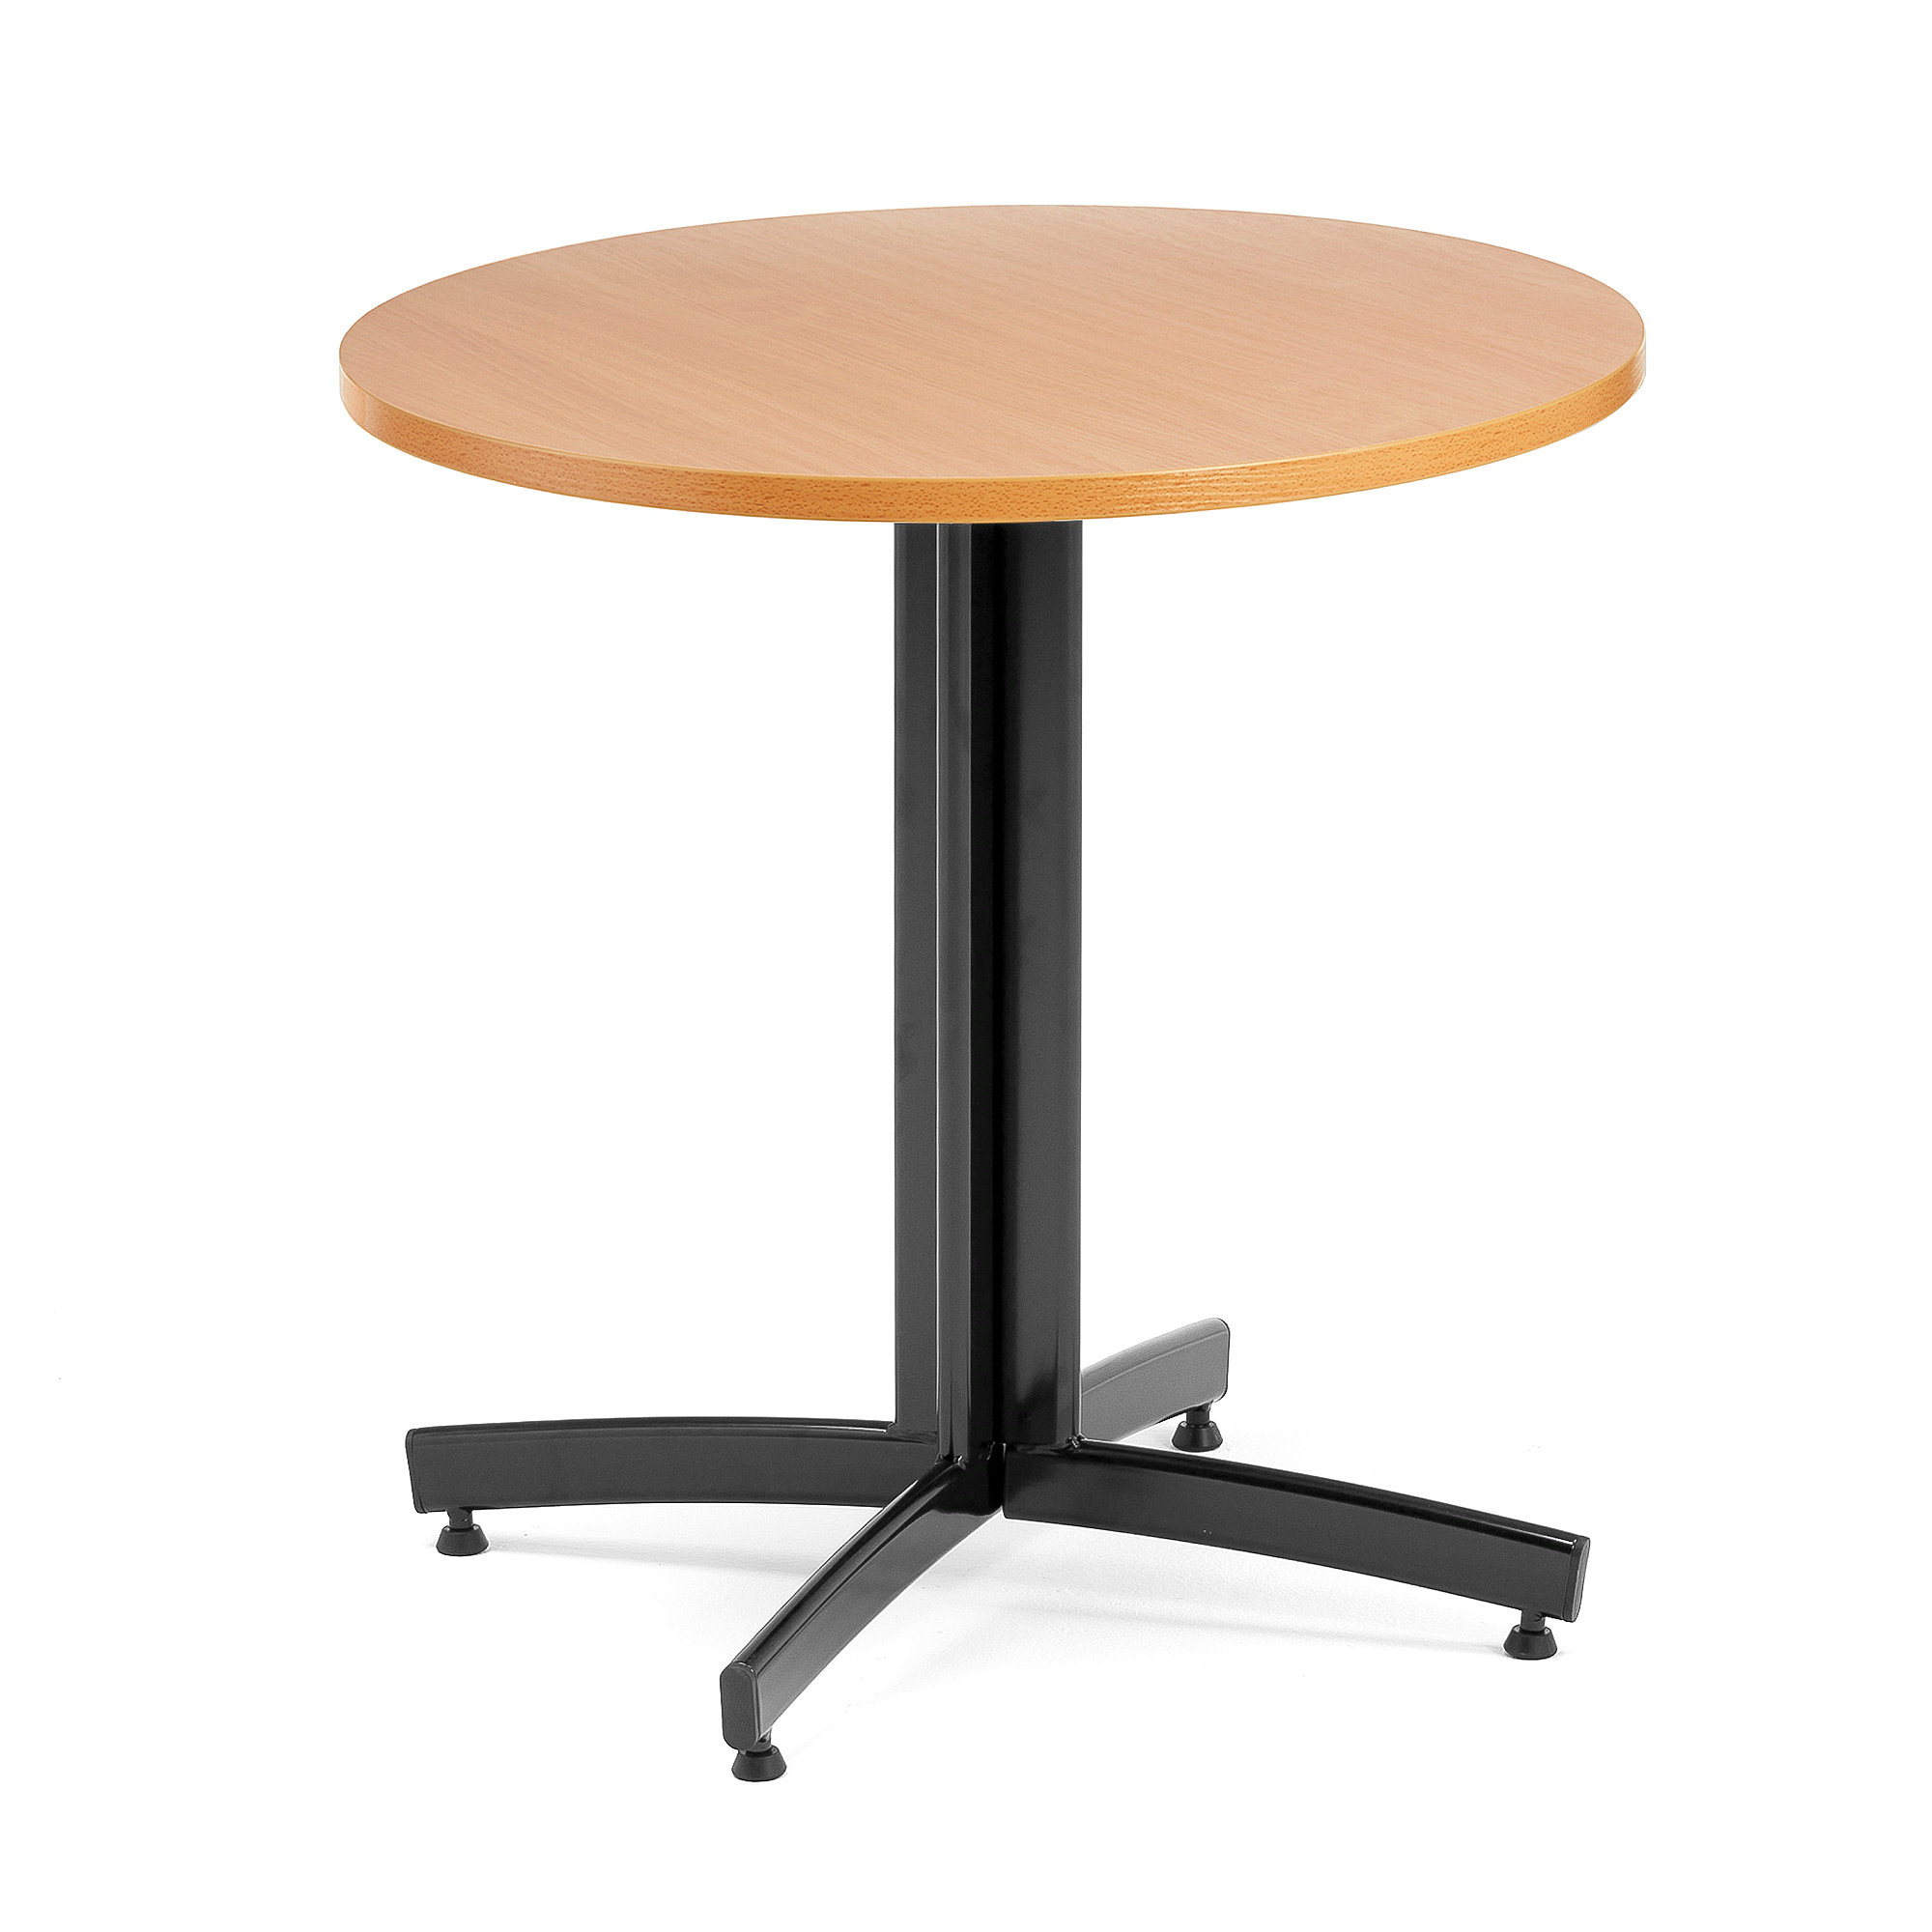 Jedálenský stôl SANNA, okrúhly Ø 700 x V 720 mm, buk / čierna